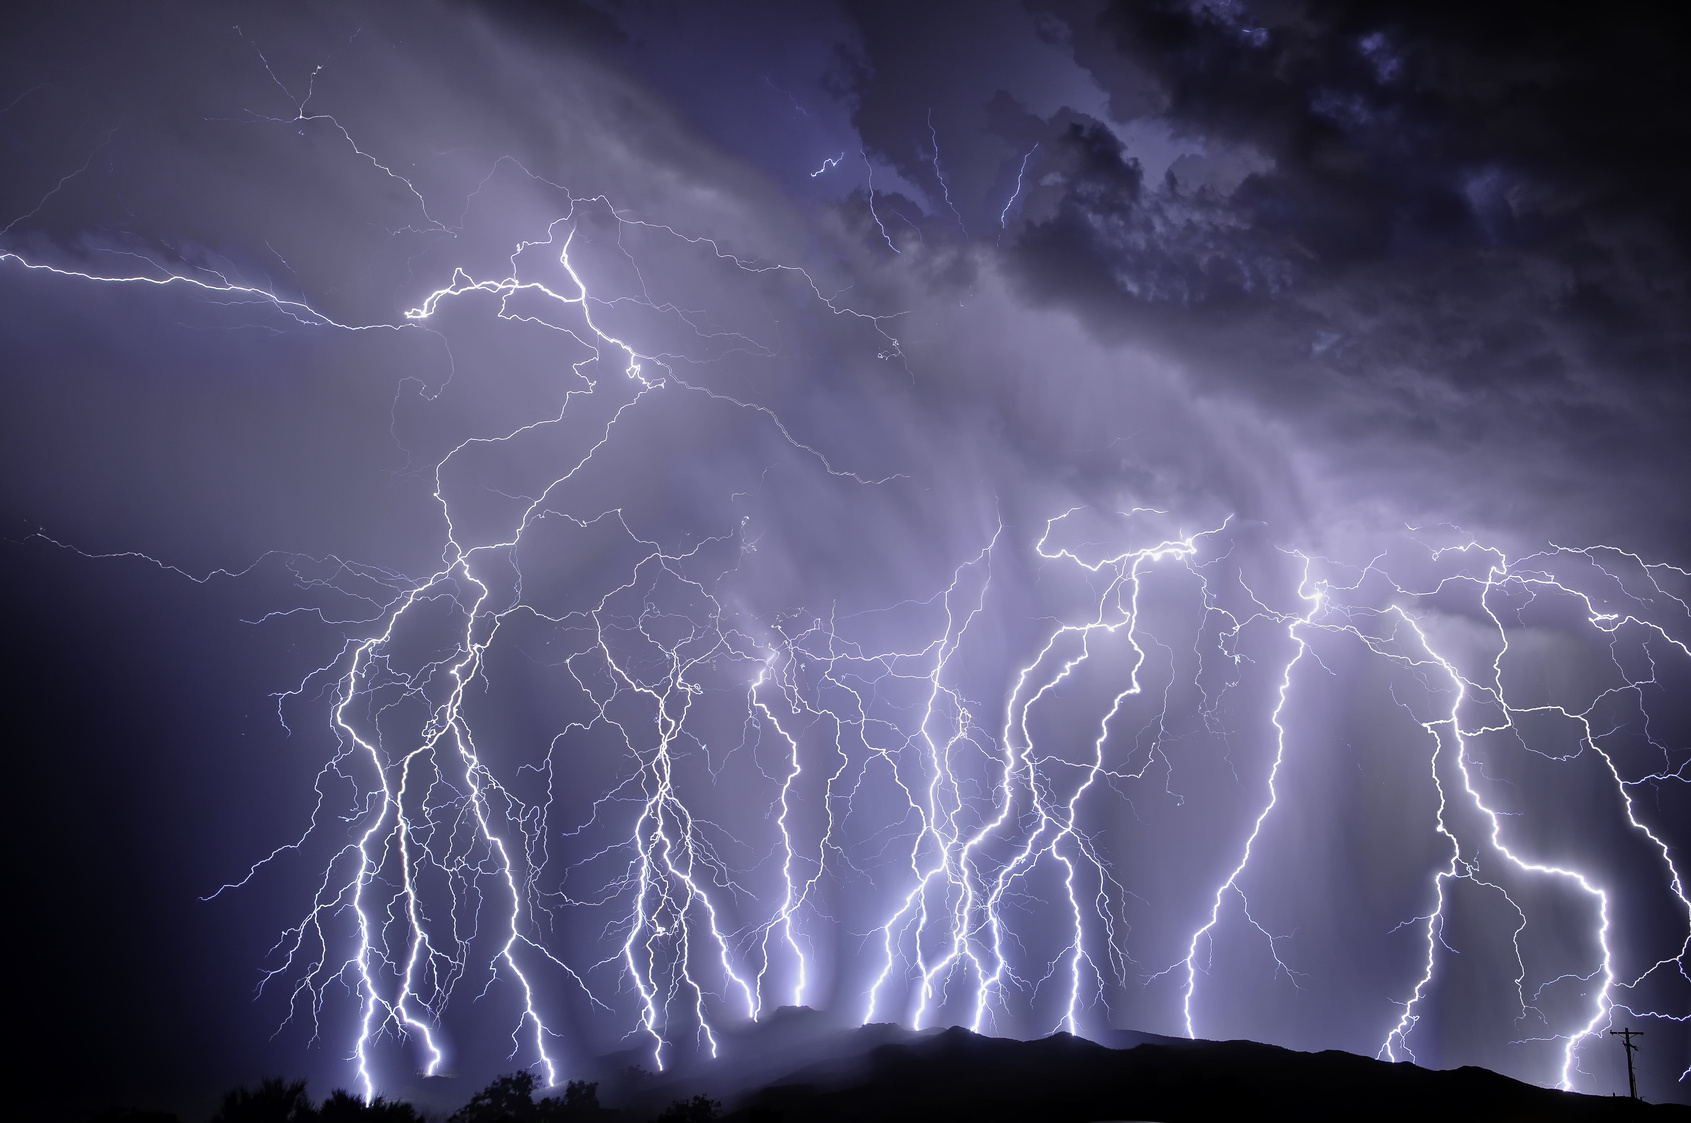 雷电闪电乌云自然风景图片素材图片下载-素材编号11611256-素材天下图库